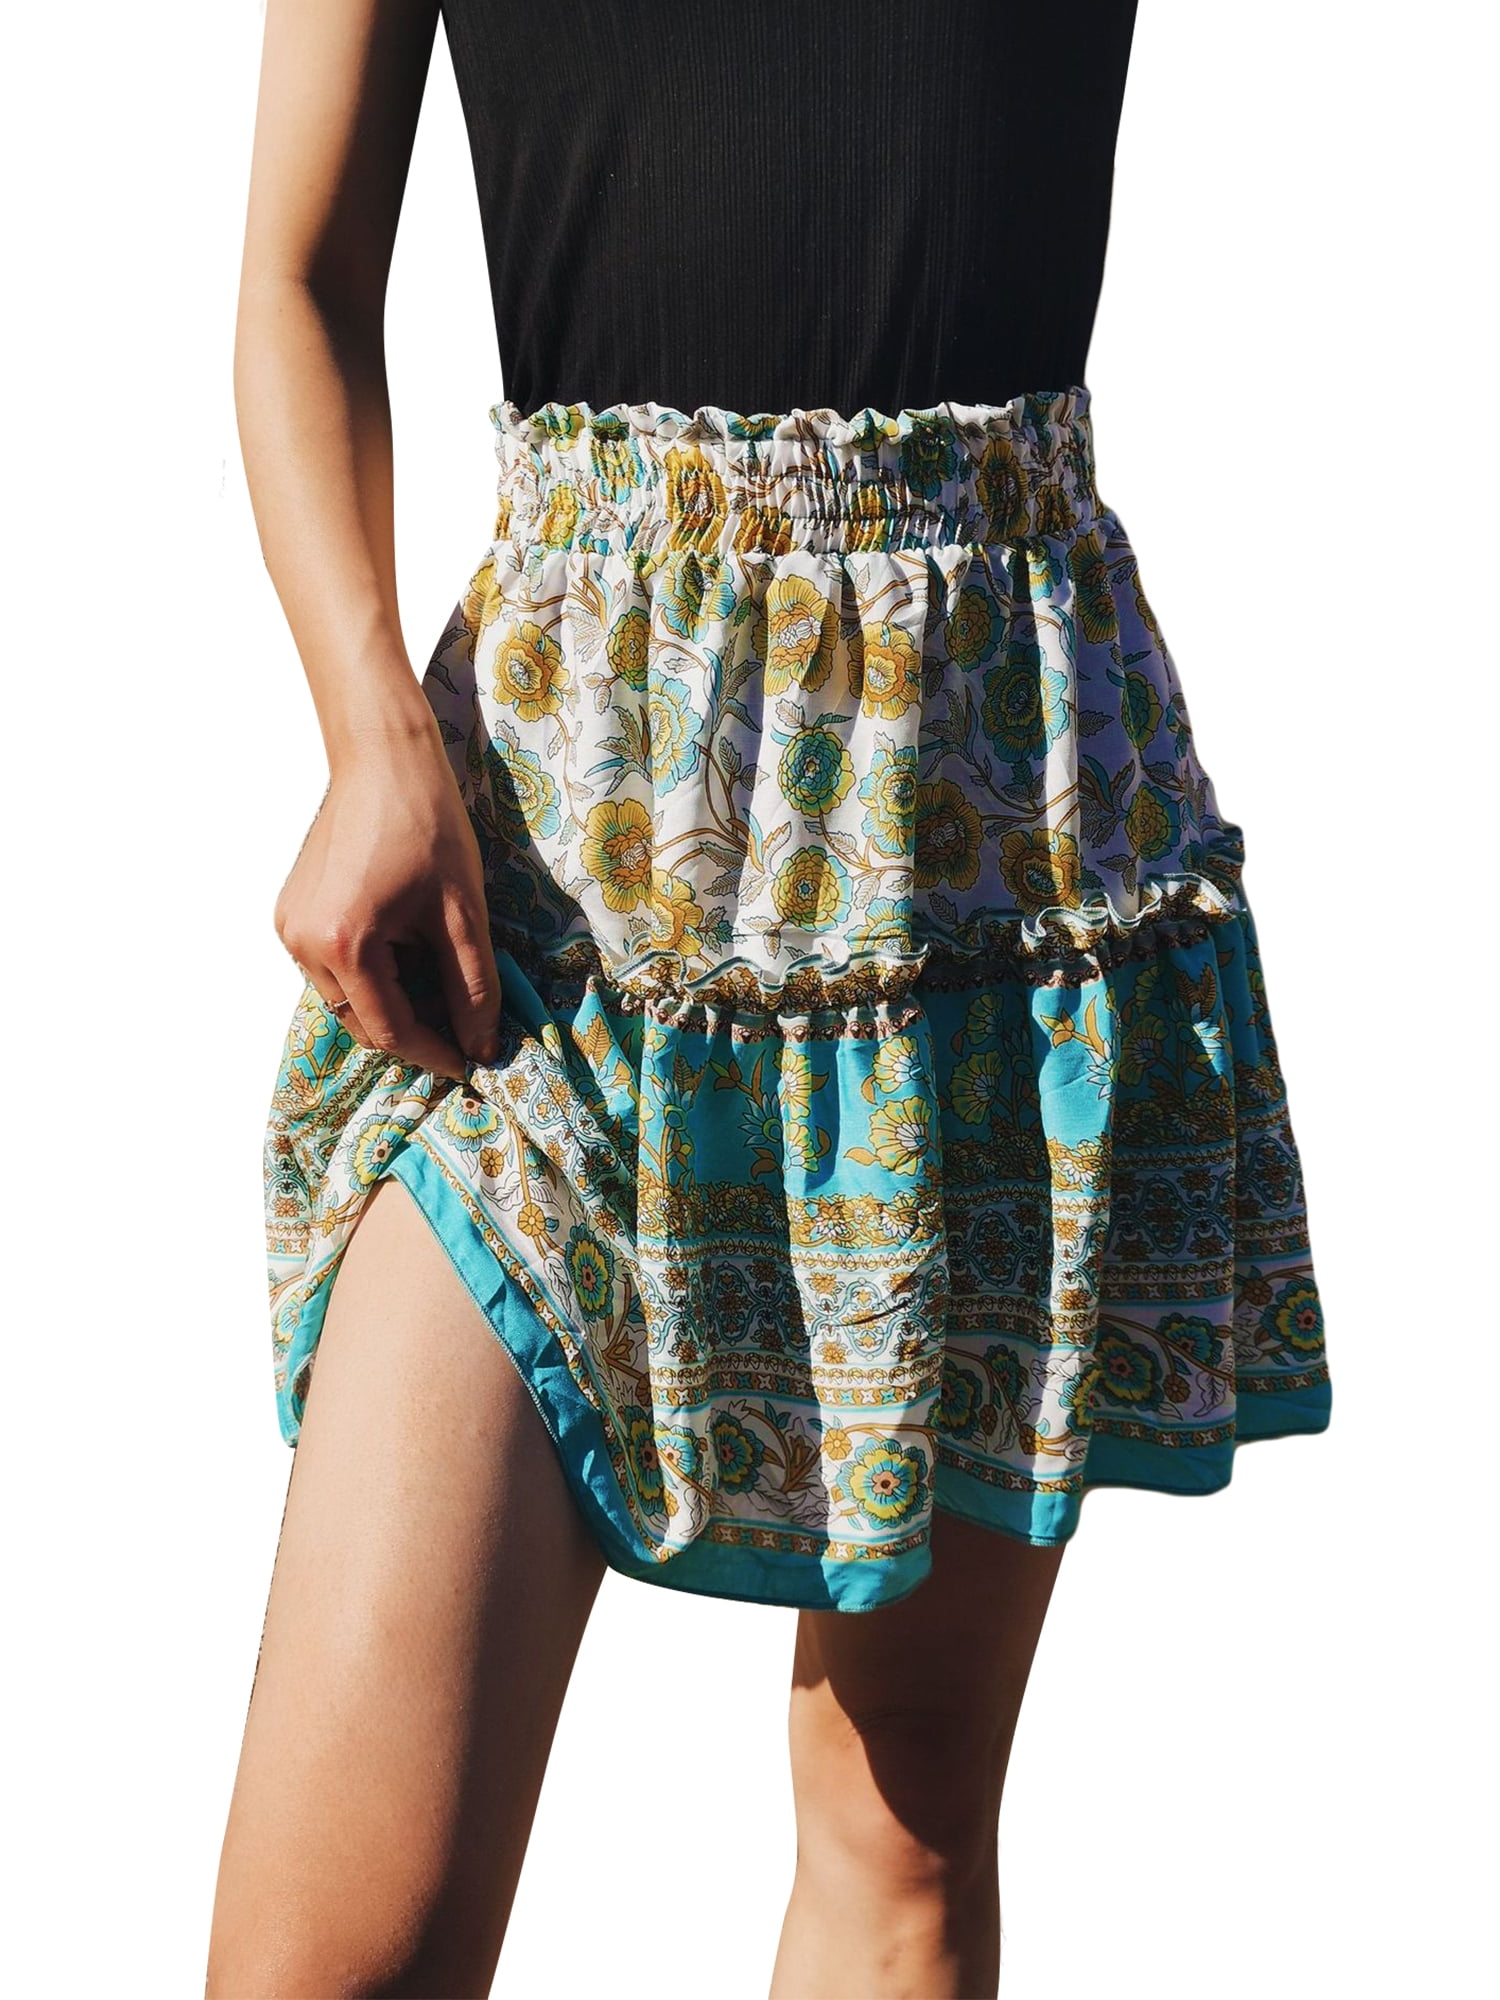 HiMONE - Women's Summer Boho Cute High Waist Ruffle Skirt Floral Print ...